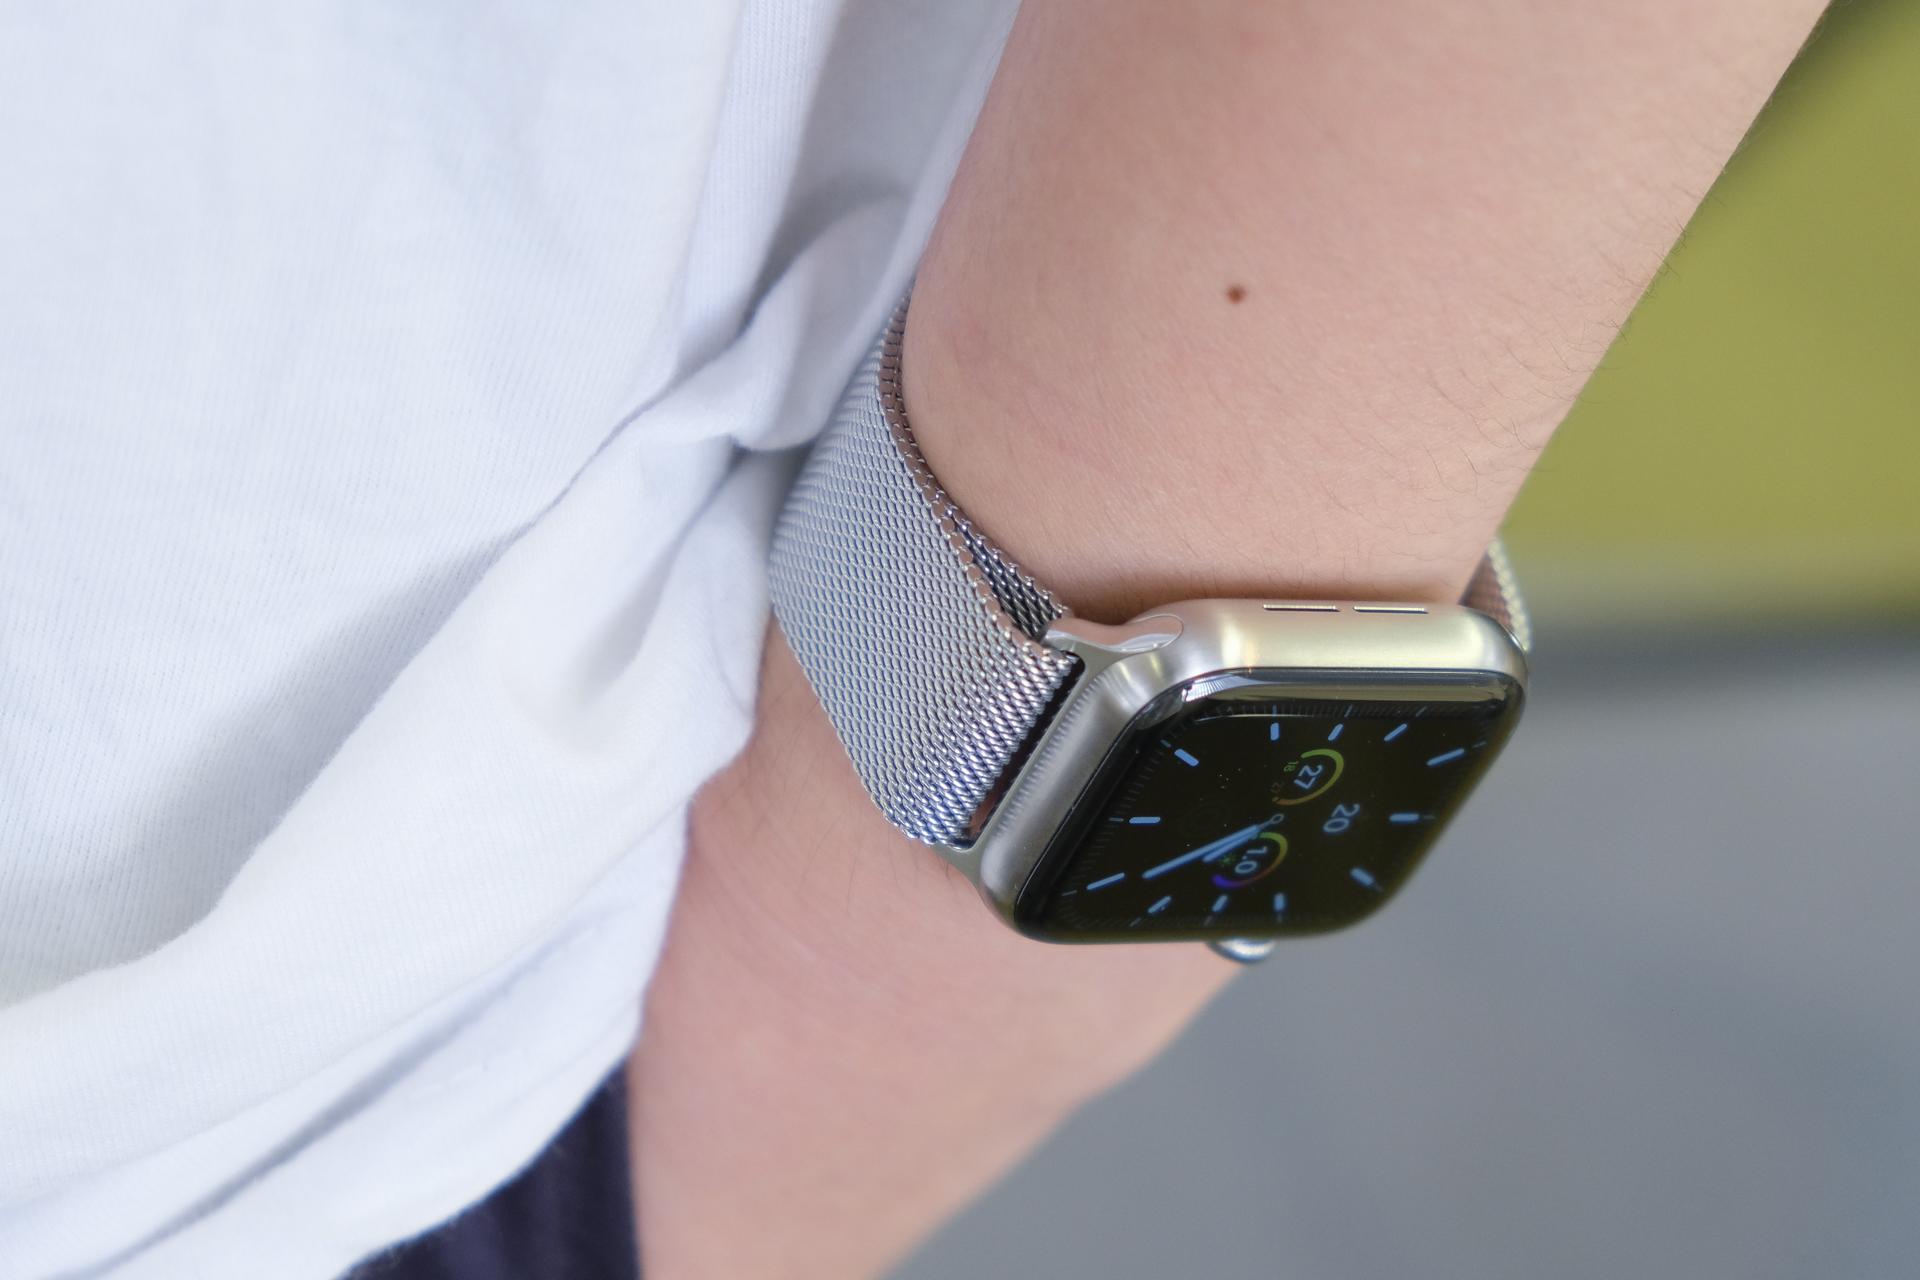 Apple Watch Series 5はチタンになったことで時計に近づいた。けれど 